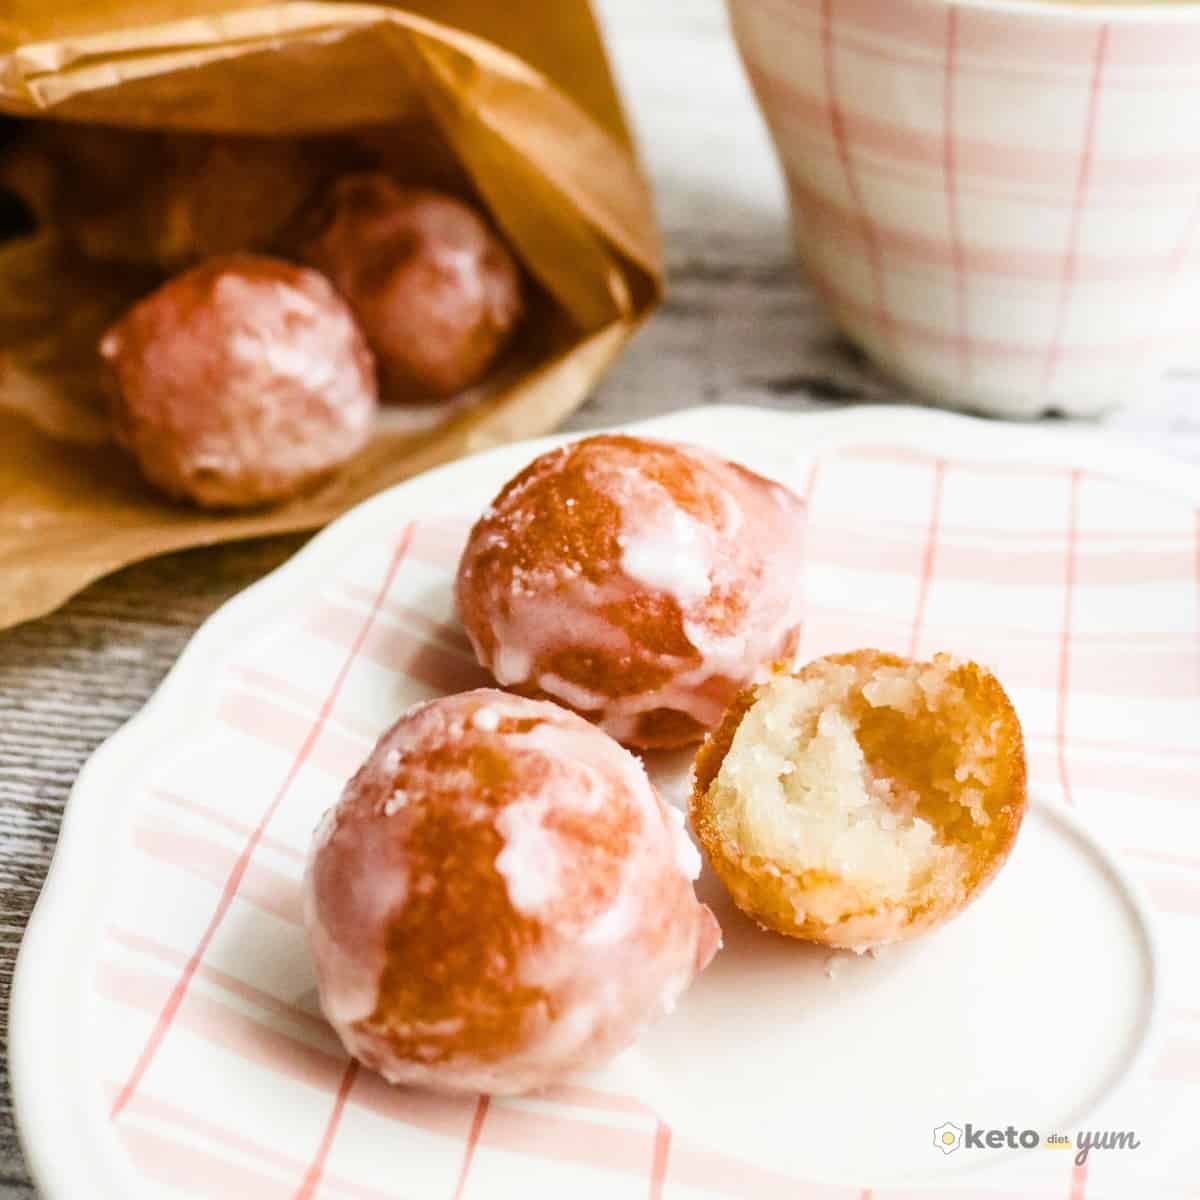 Keto Glazed Donut Balls